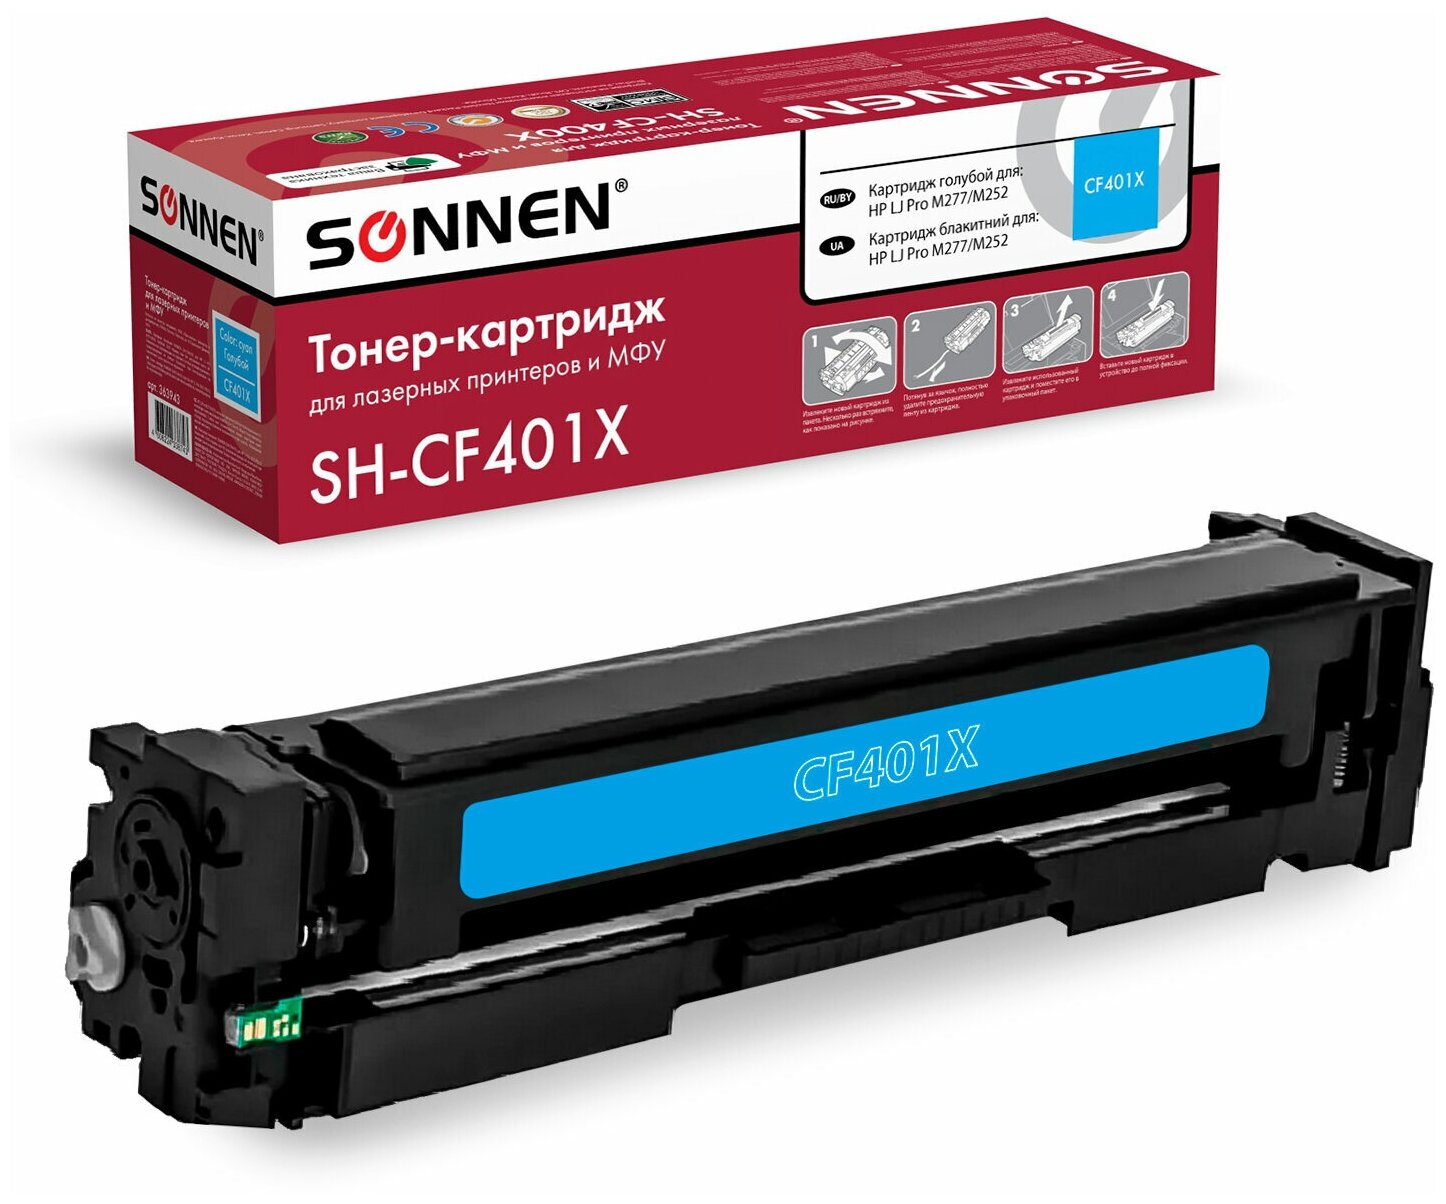 Картридж лазерный SONNEN (SH-CF401X) для HP LJ Pro M277/M252 высшее качество, голубой, 2300 страниц, 363943